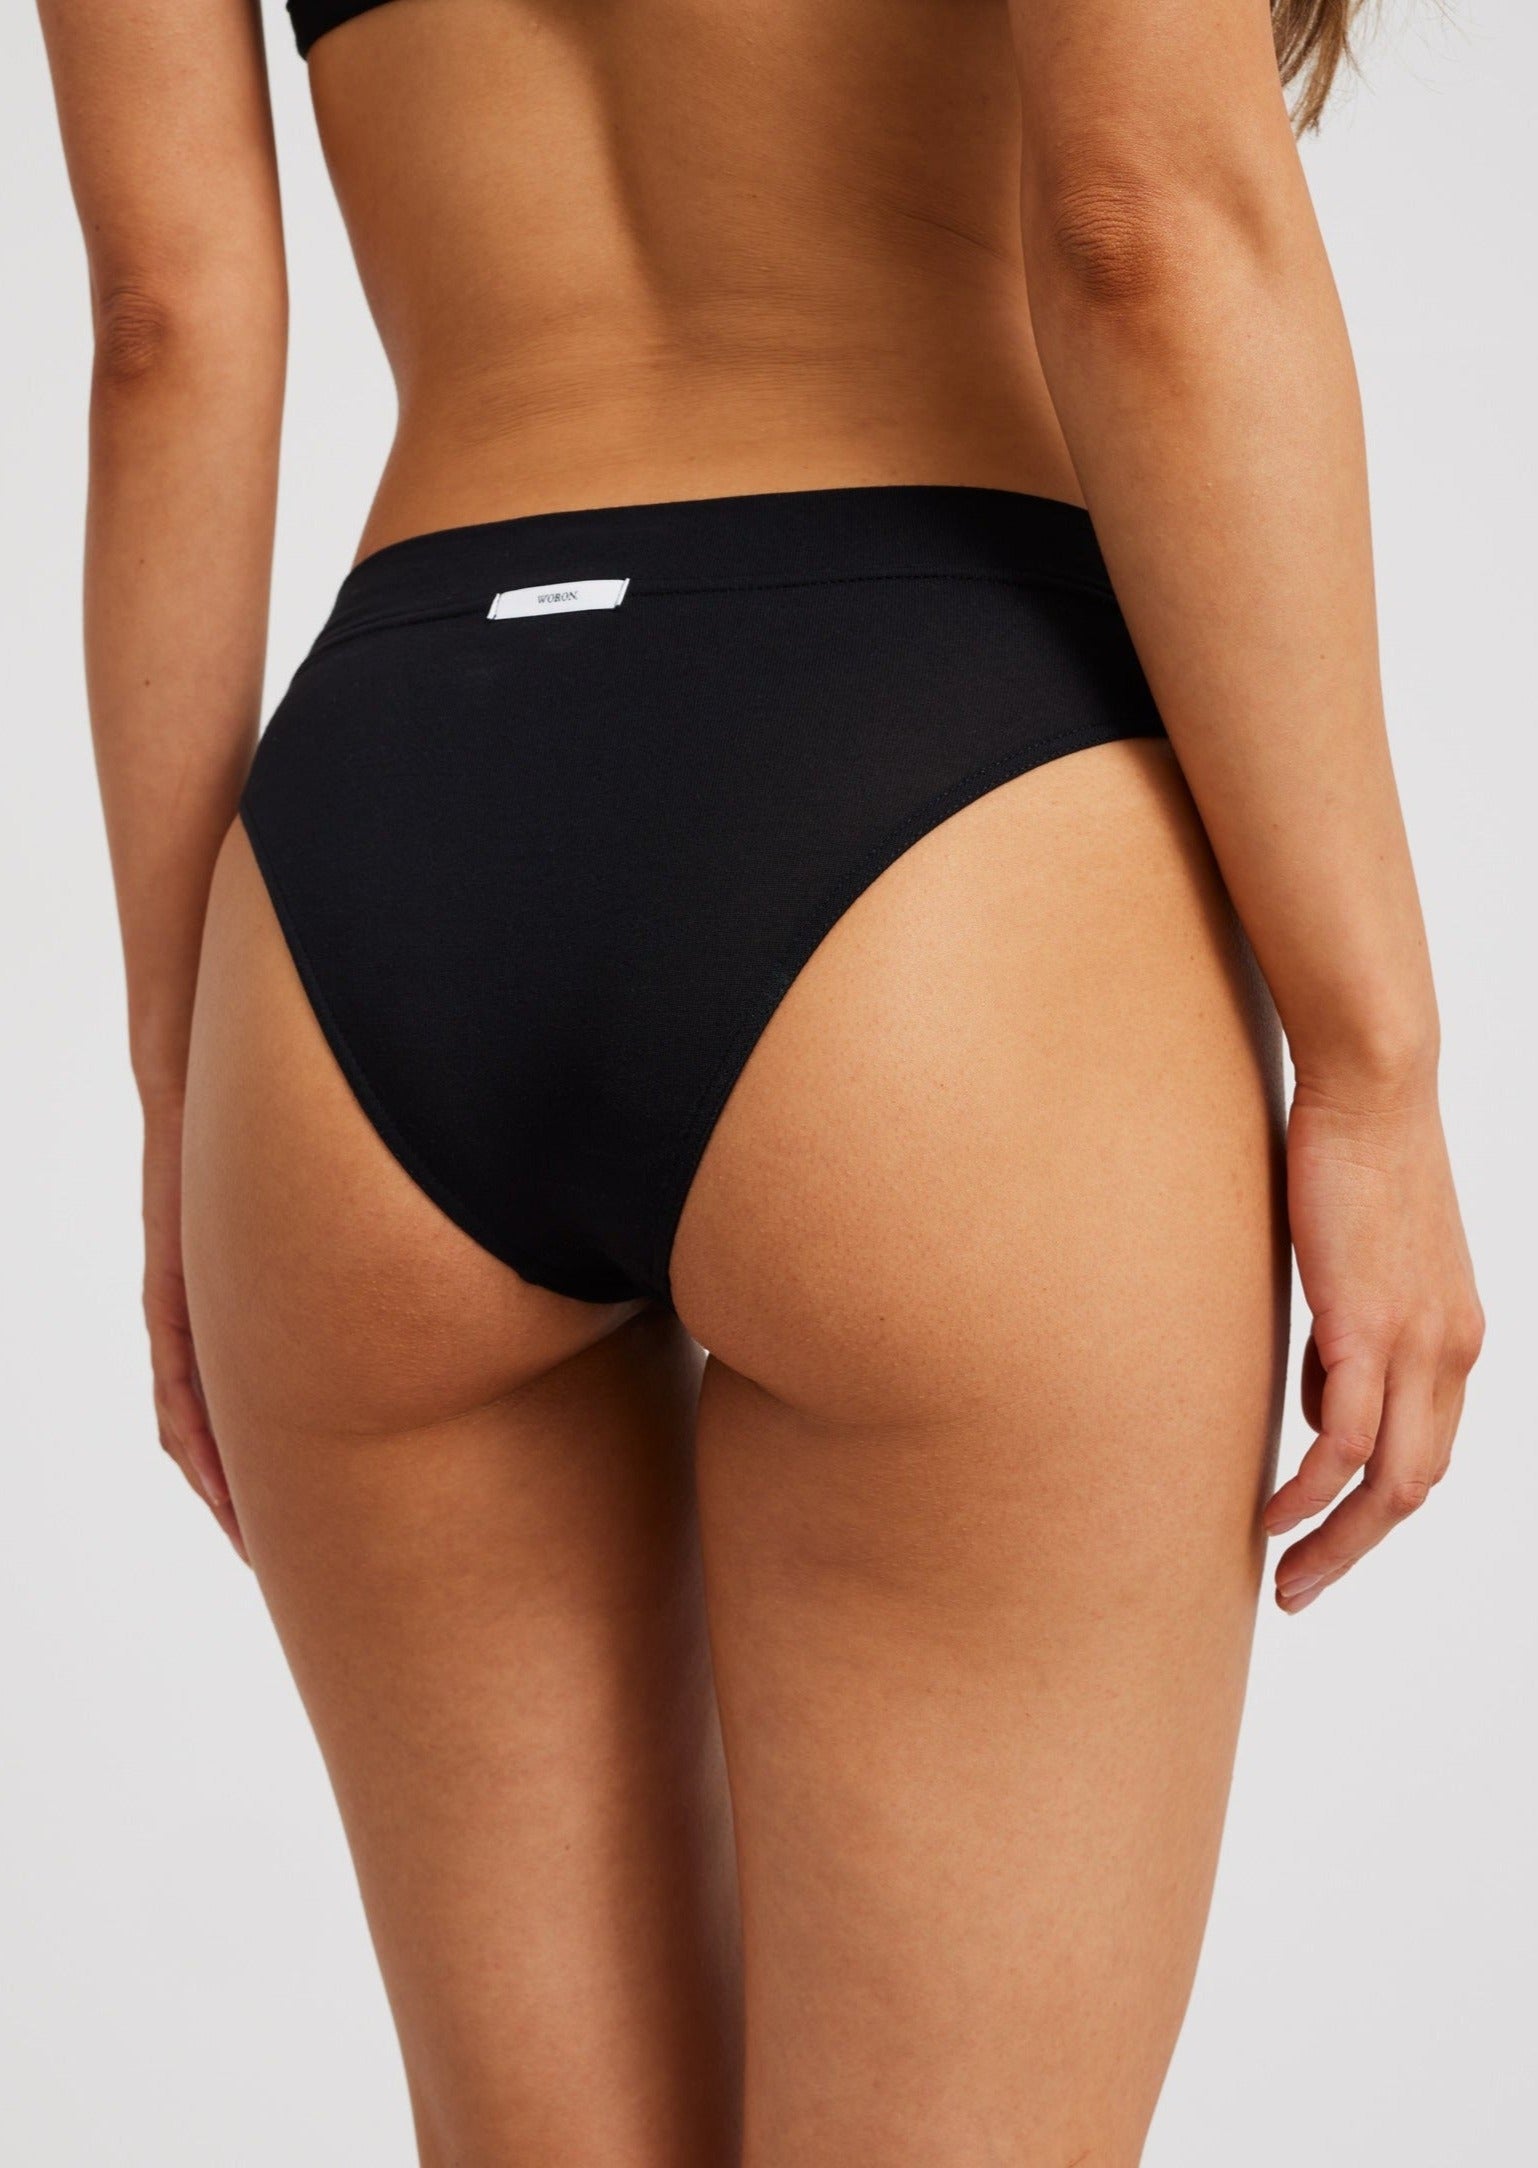 Buy bebe s Women's 3 Pack Hi Cut Panties with Wide Elastic